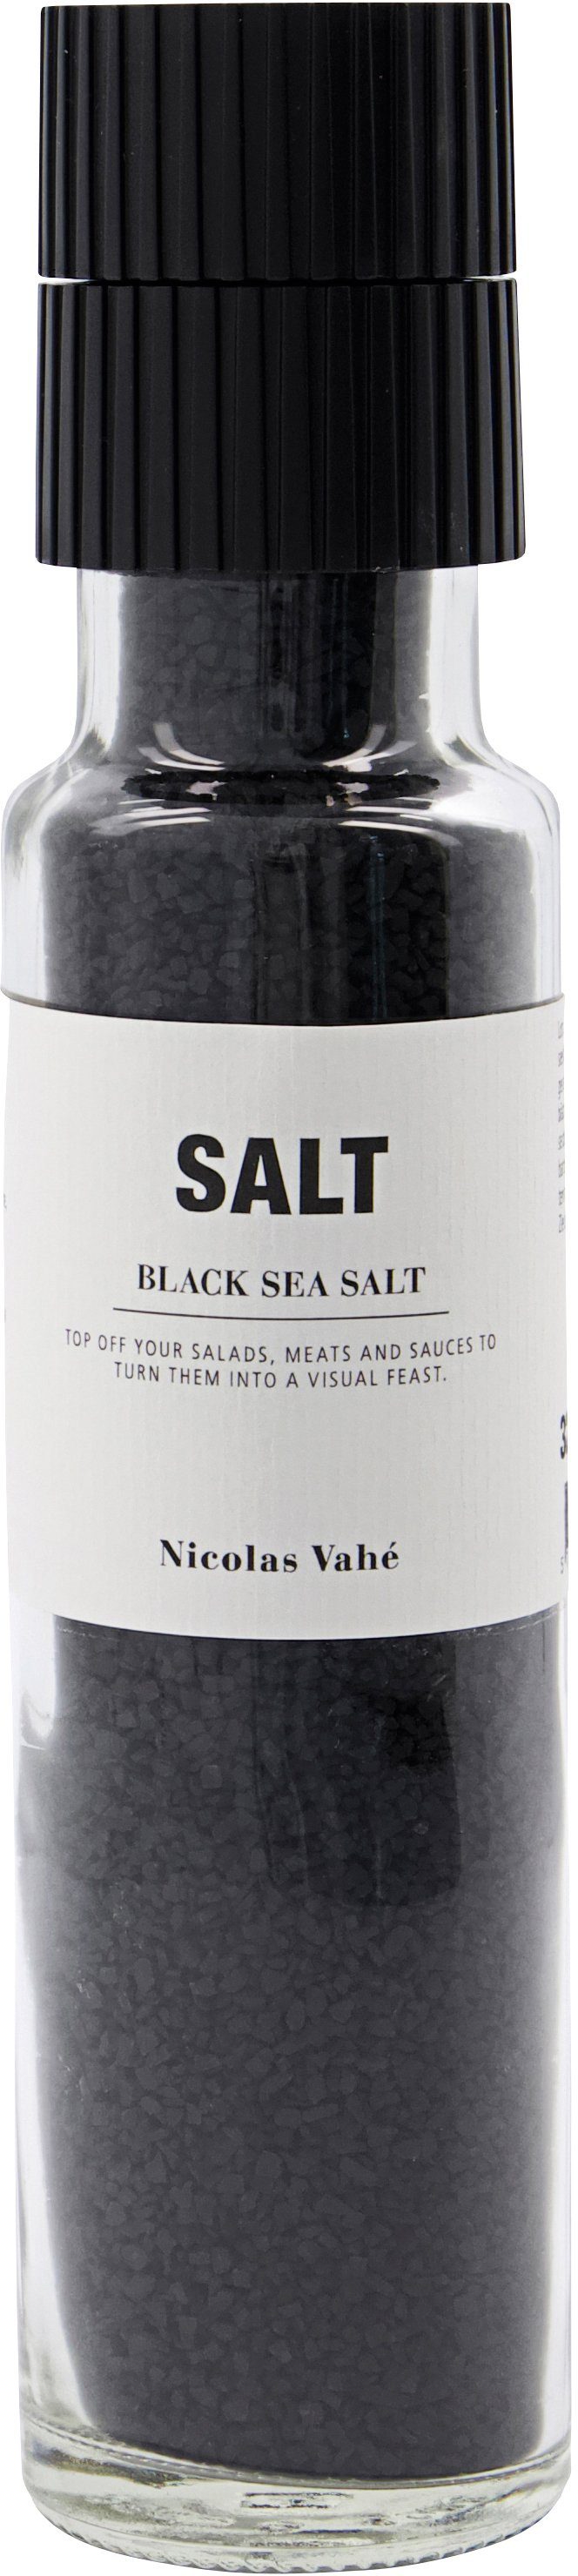 Nicolas Vahe - Salt - Black Sea Salt Salt 